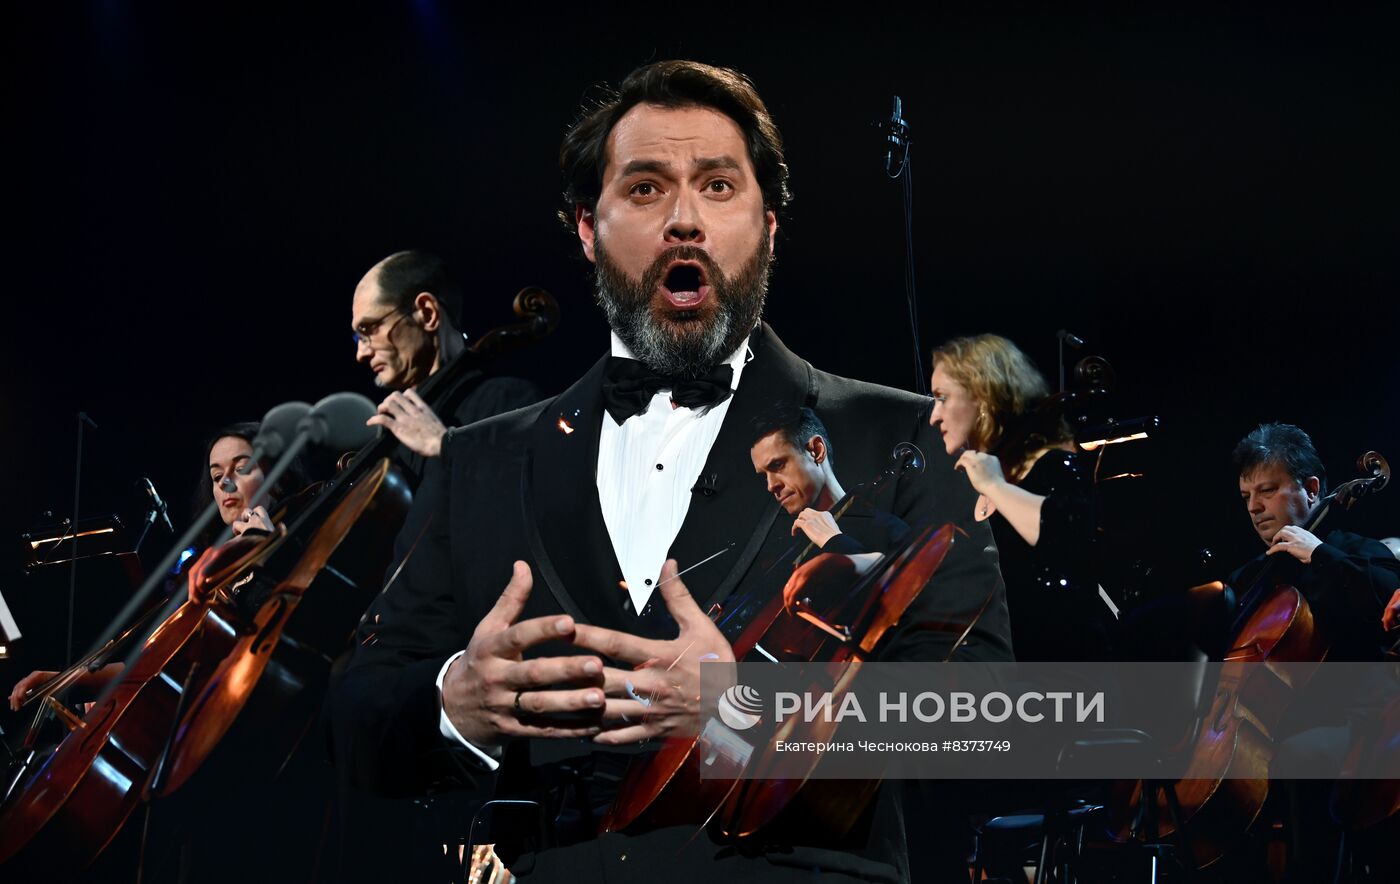 Концерт "Посвящение Федору Шаляпину" в Сочи